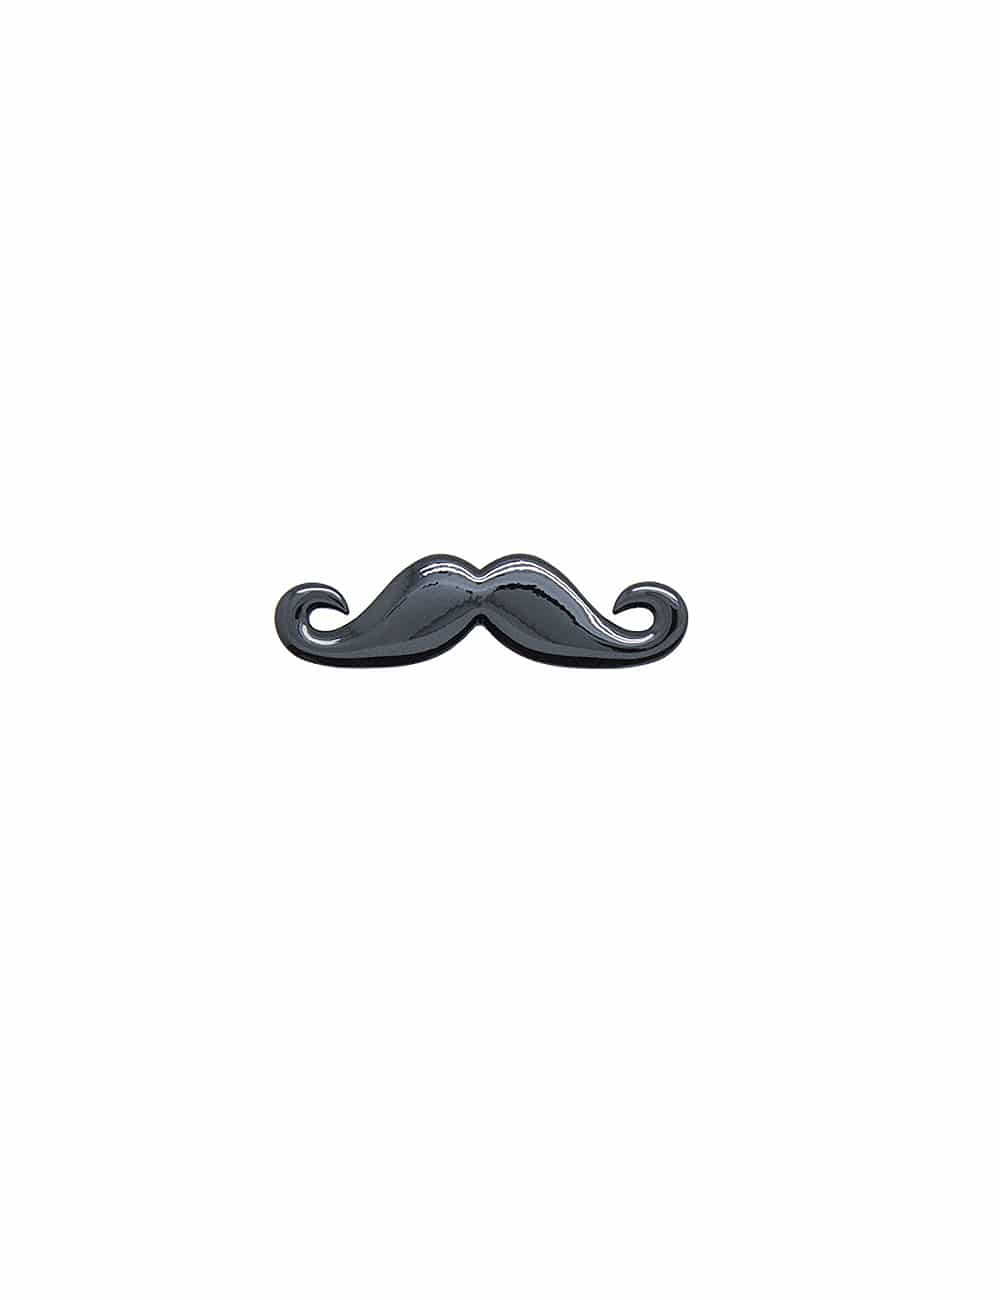 Jet Black Moustache Tie Clip - The Shirt Bar